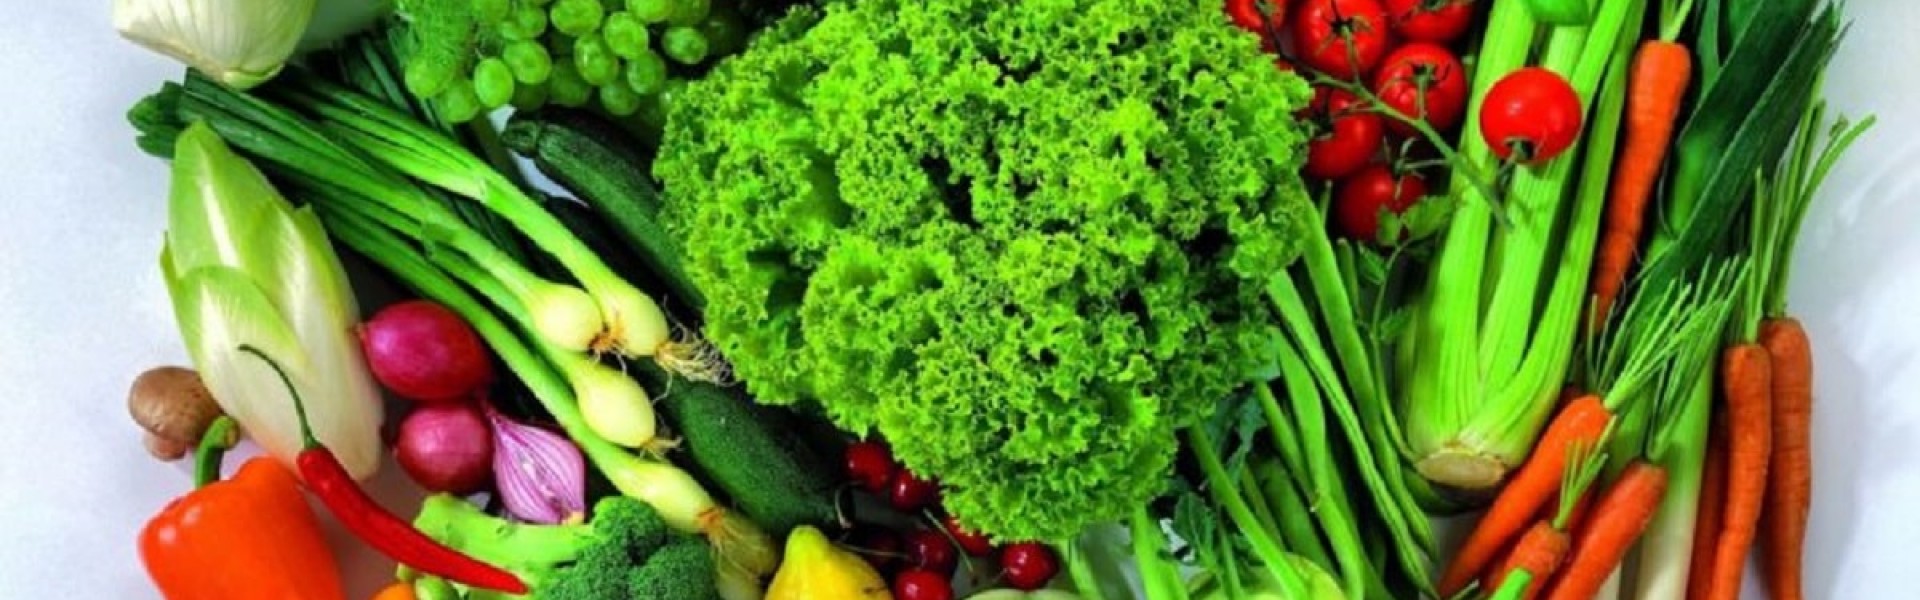 پسکجا-سبزیجات-اماده-به-طبخ-محنا